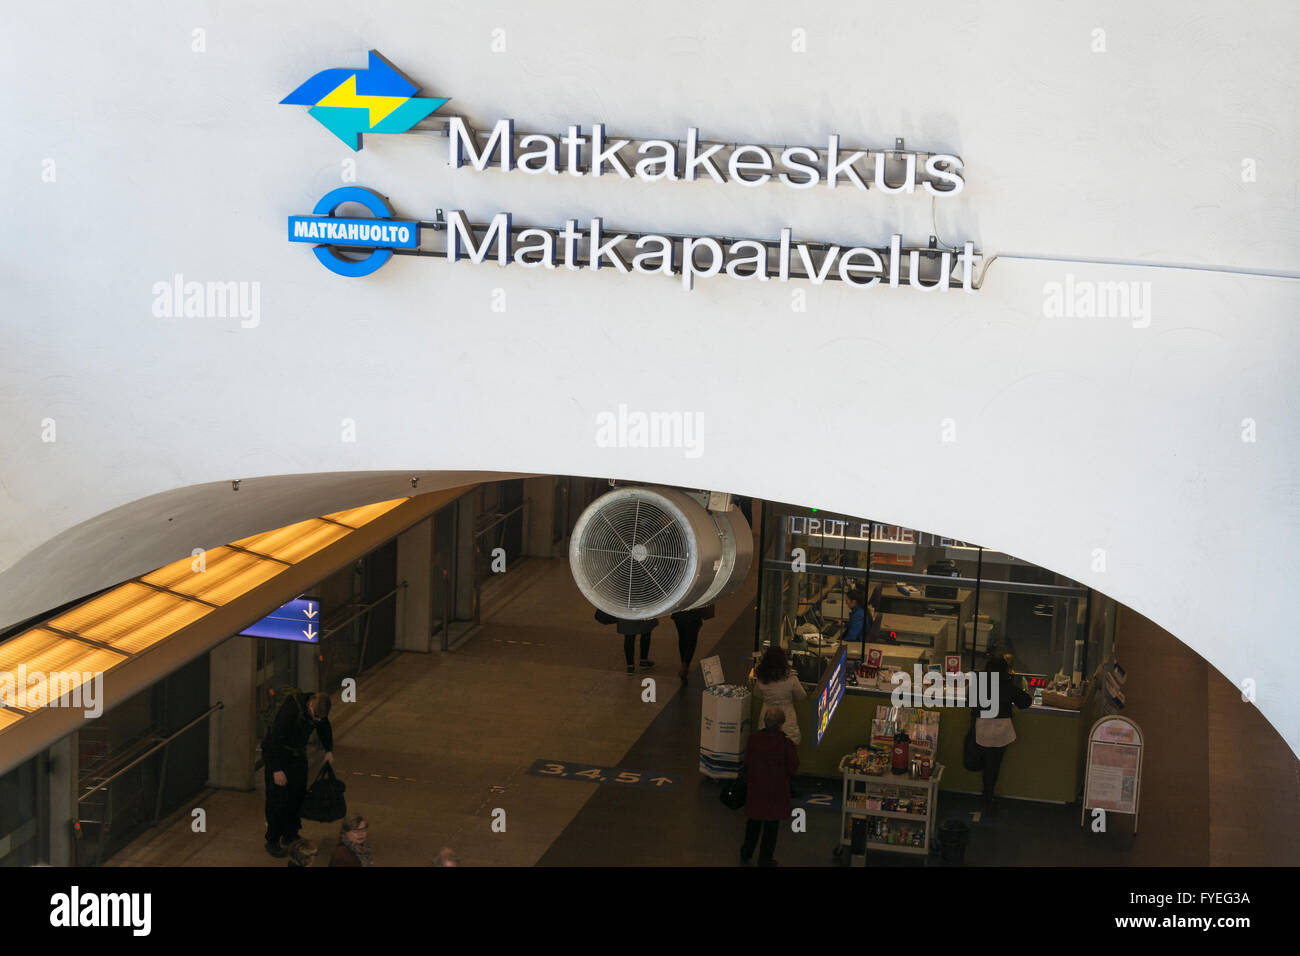 Kamppi travel centre in Helsinki Finland Stock Photo - Alamy